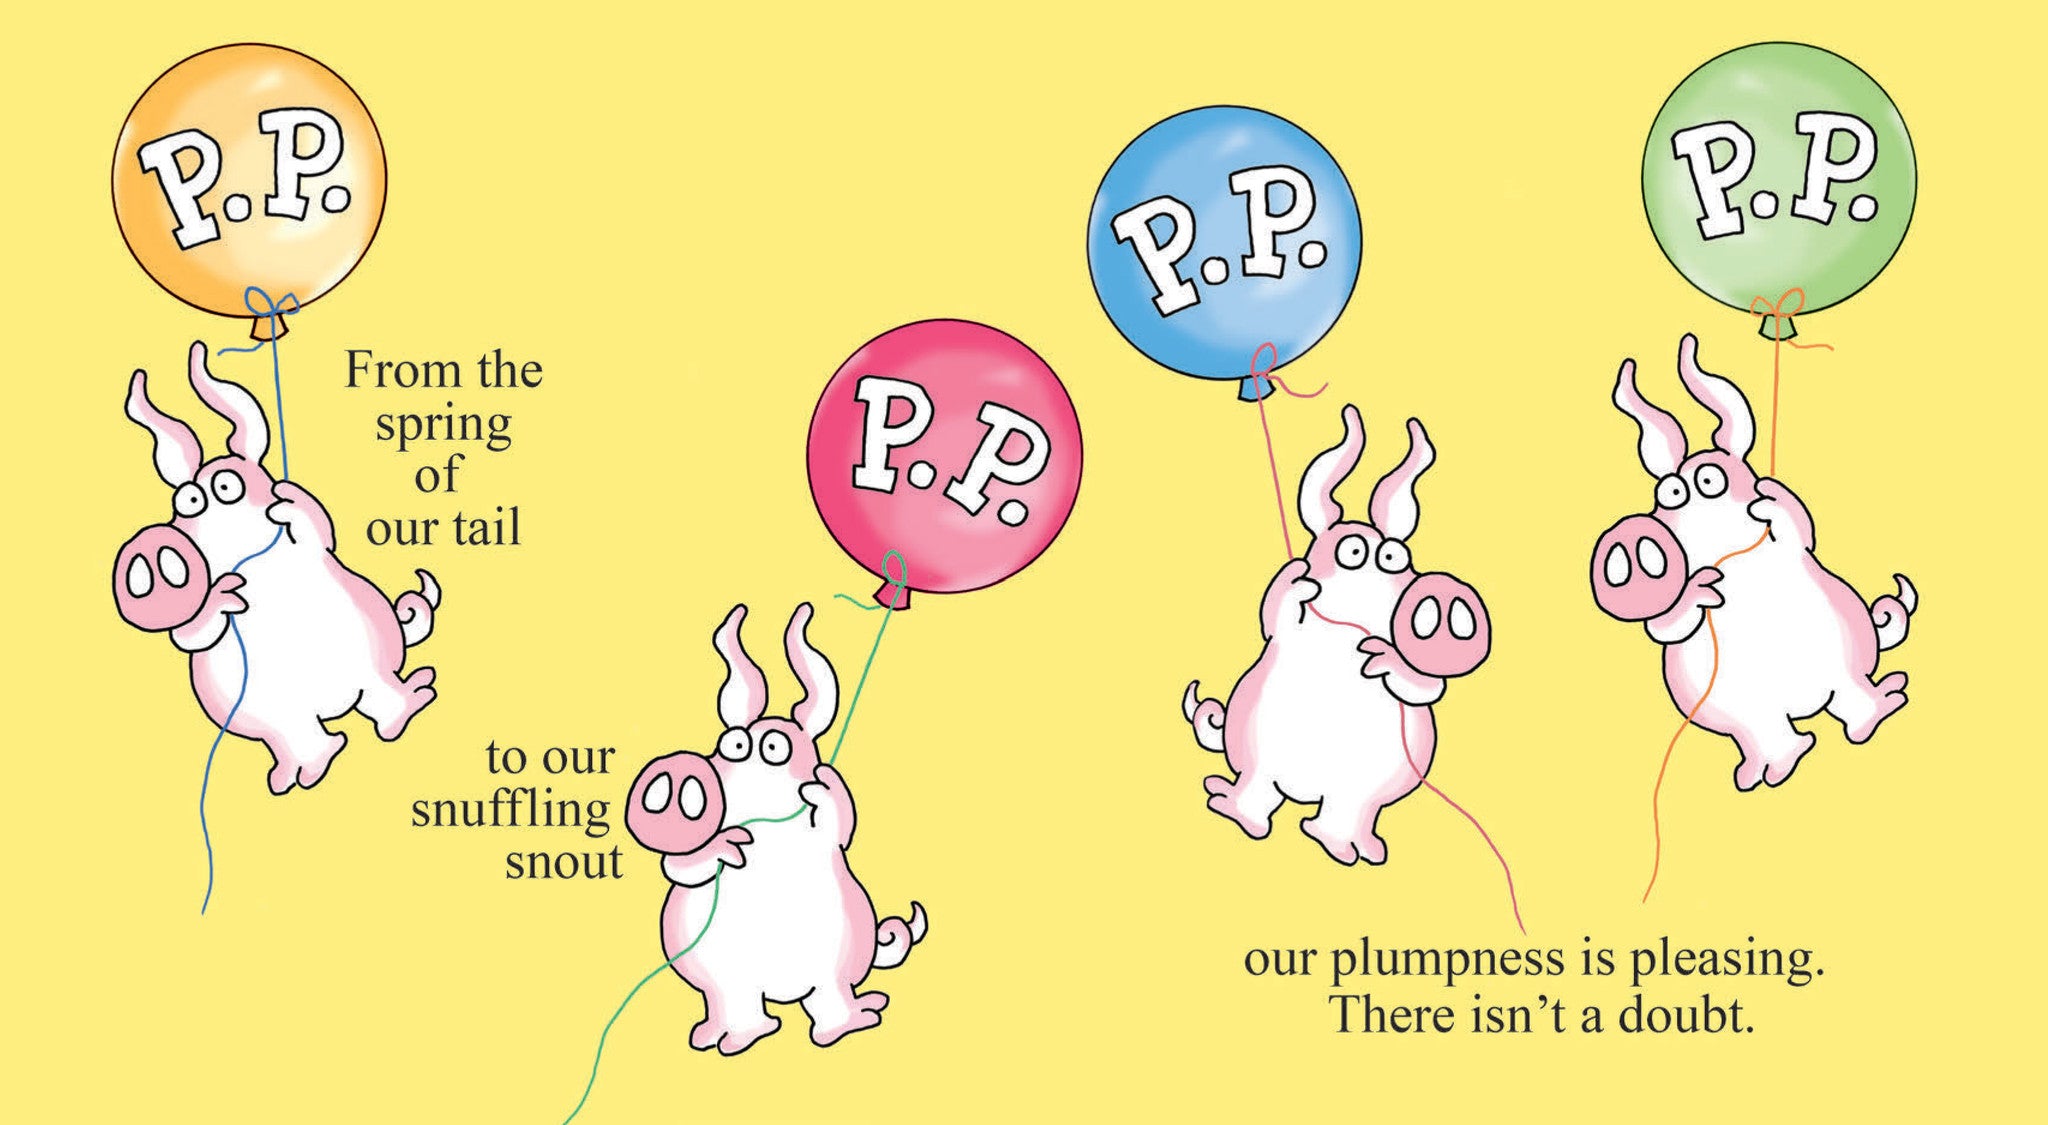 Perfect Piggies! - Board Book